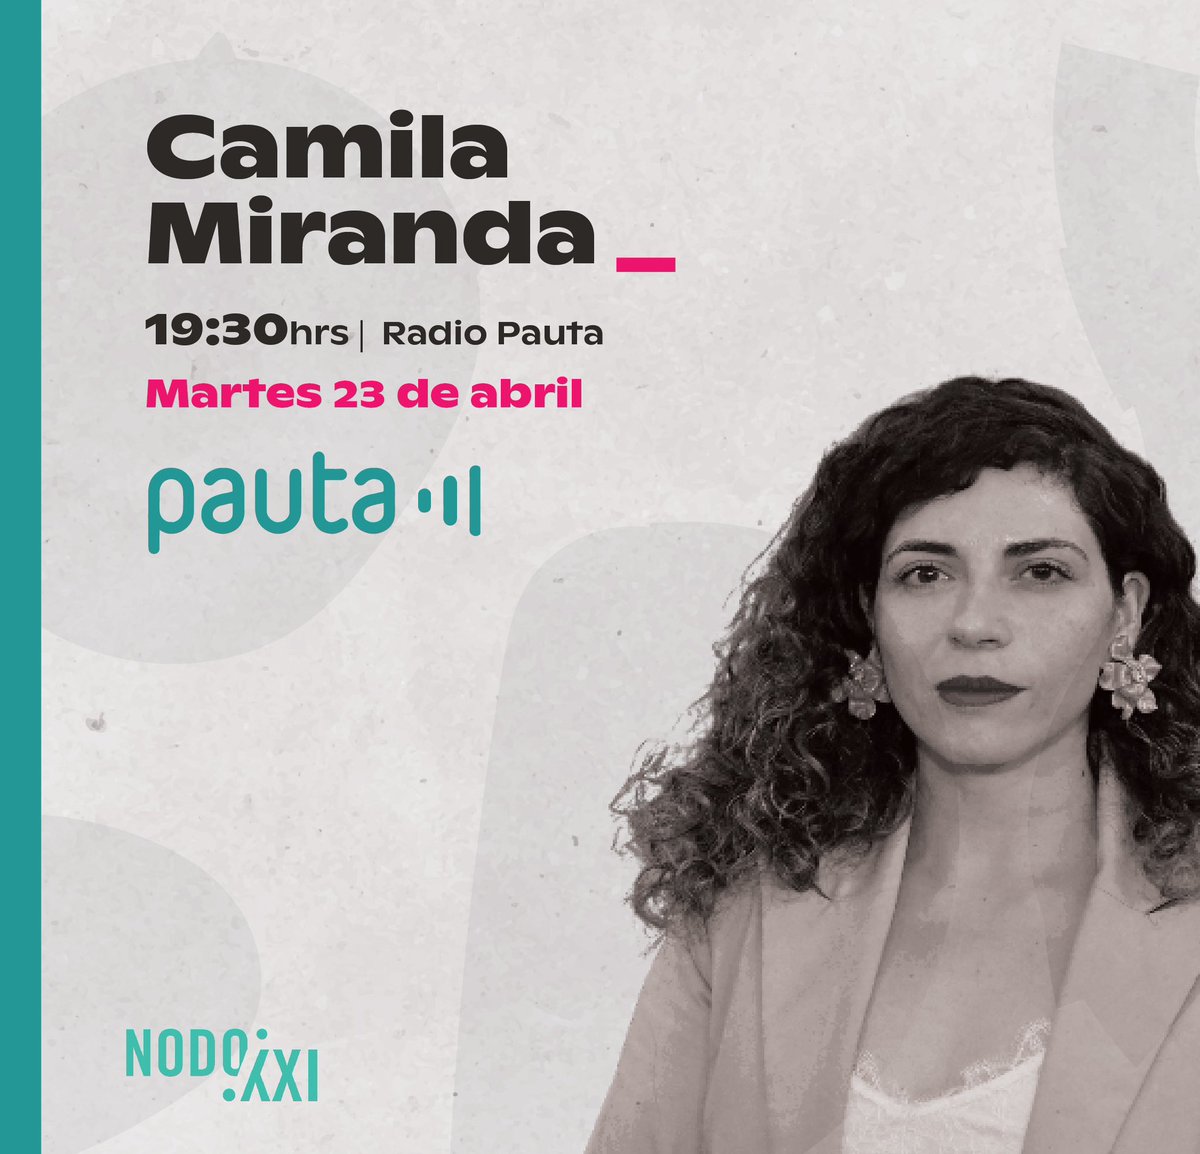 👉🏽HOY a las 19:30hrs sintoniza a @CamilaMirandaMe en Radio Pauta @Pauta_cl 📡💬 🔗 Conéctate acá: pauta.cl/radio-en-vivo/ 👈🏽